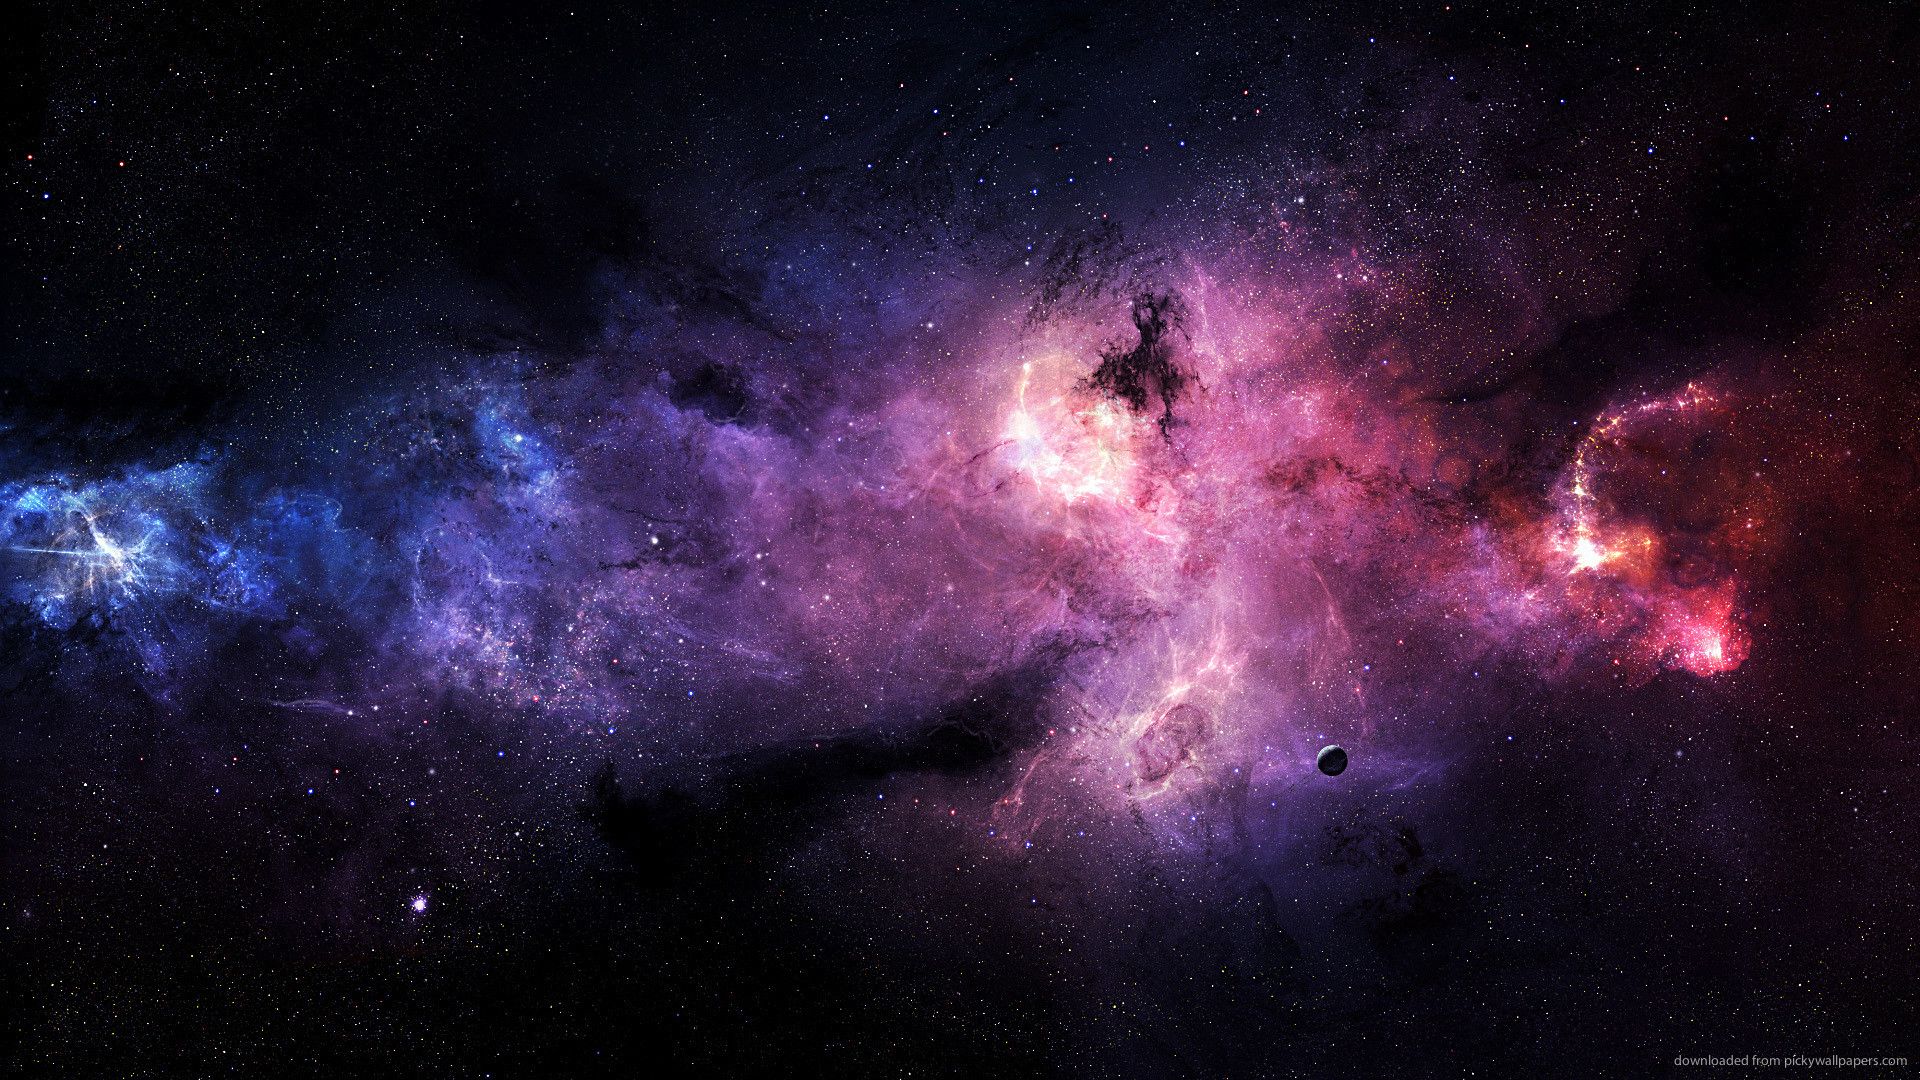 Không gian (Space) luôn là điều khiến con người thích thú và muốn khám phá. Vũ trụ đầy bí ẩn và hoành tráng với hành tinh, sao, hố đen sẽ khiến bạn say mê. Hãy cùng khám phá thế giới tuyệt đẹp này với những hình ảnh sống động và đầy mê hoặc. Nhấp vào hình ảnh để bắt đầu chuyến phiêu lưu của bạn.